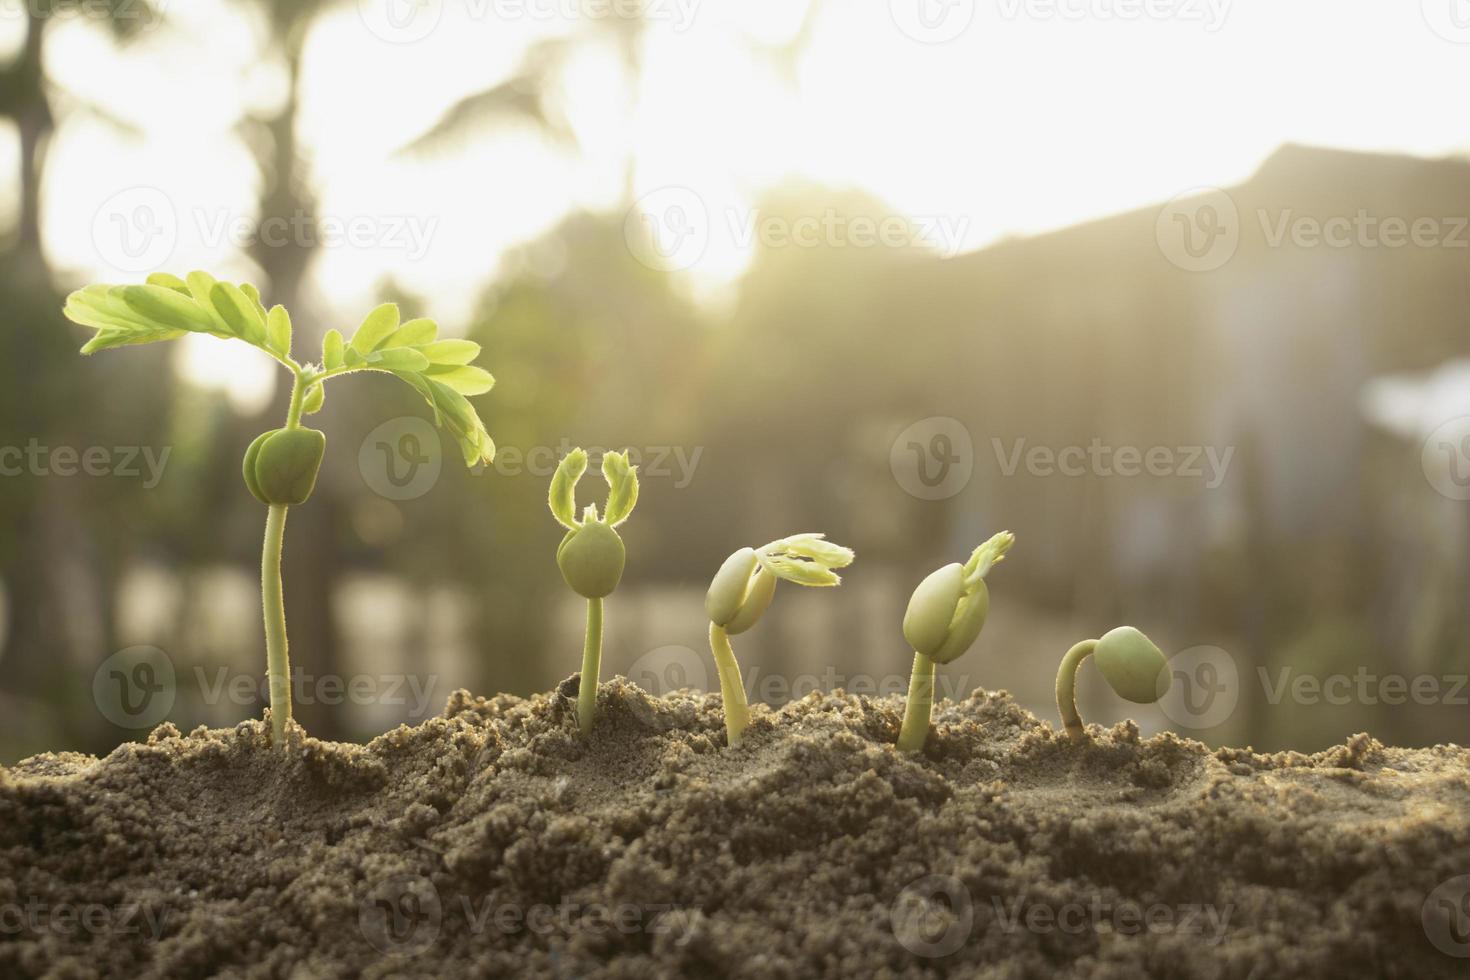 groeiende plant, jonge plant in de ochtend licht op grond achtergrond, nieuw leven concept.small planten op de grond in spring.fresh, zaad, foto vers en landbouw concept idee.